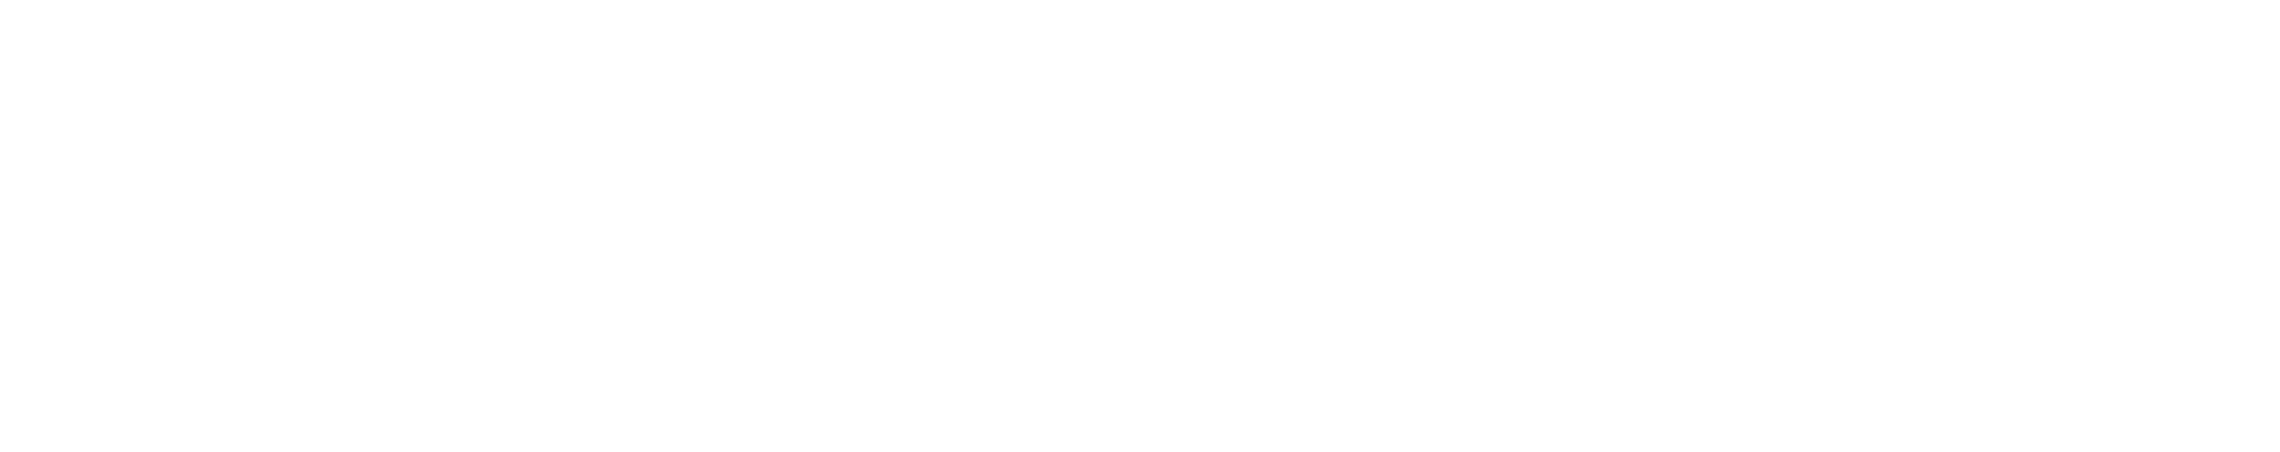 グローバルキャリアフェア in こうち 2023